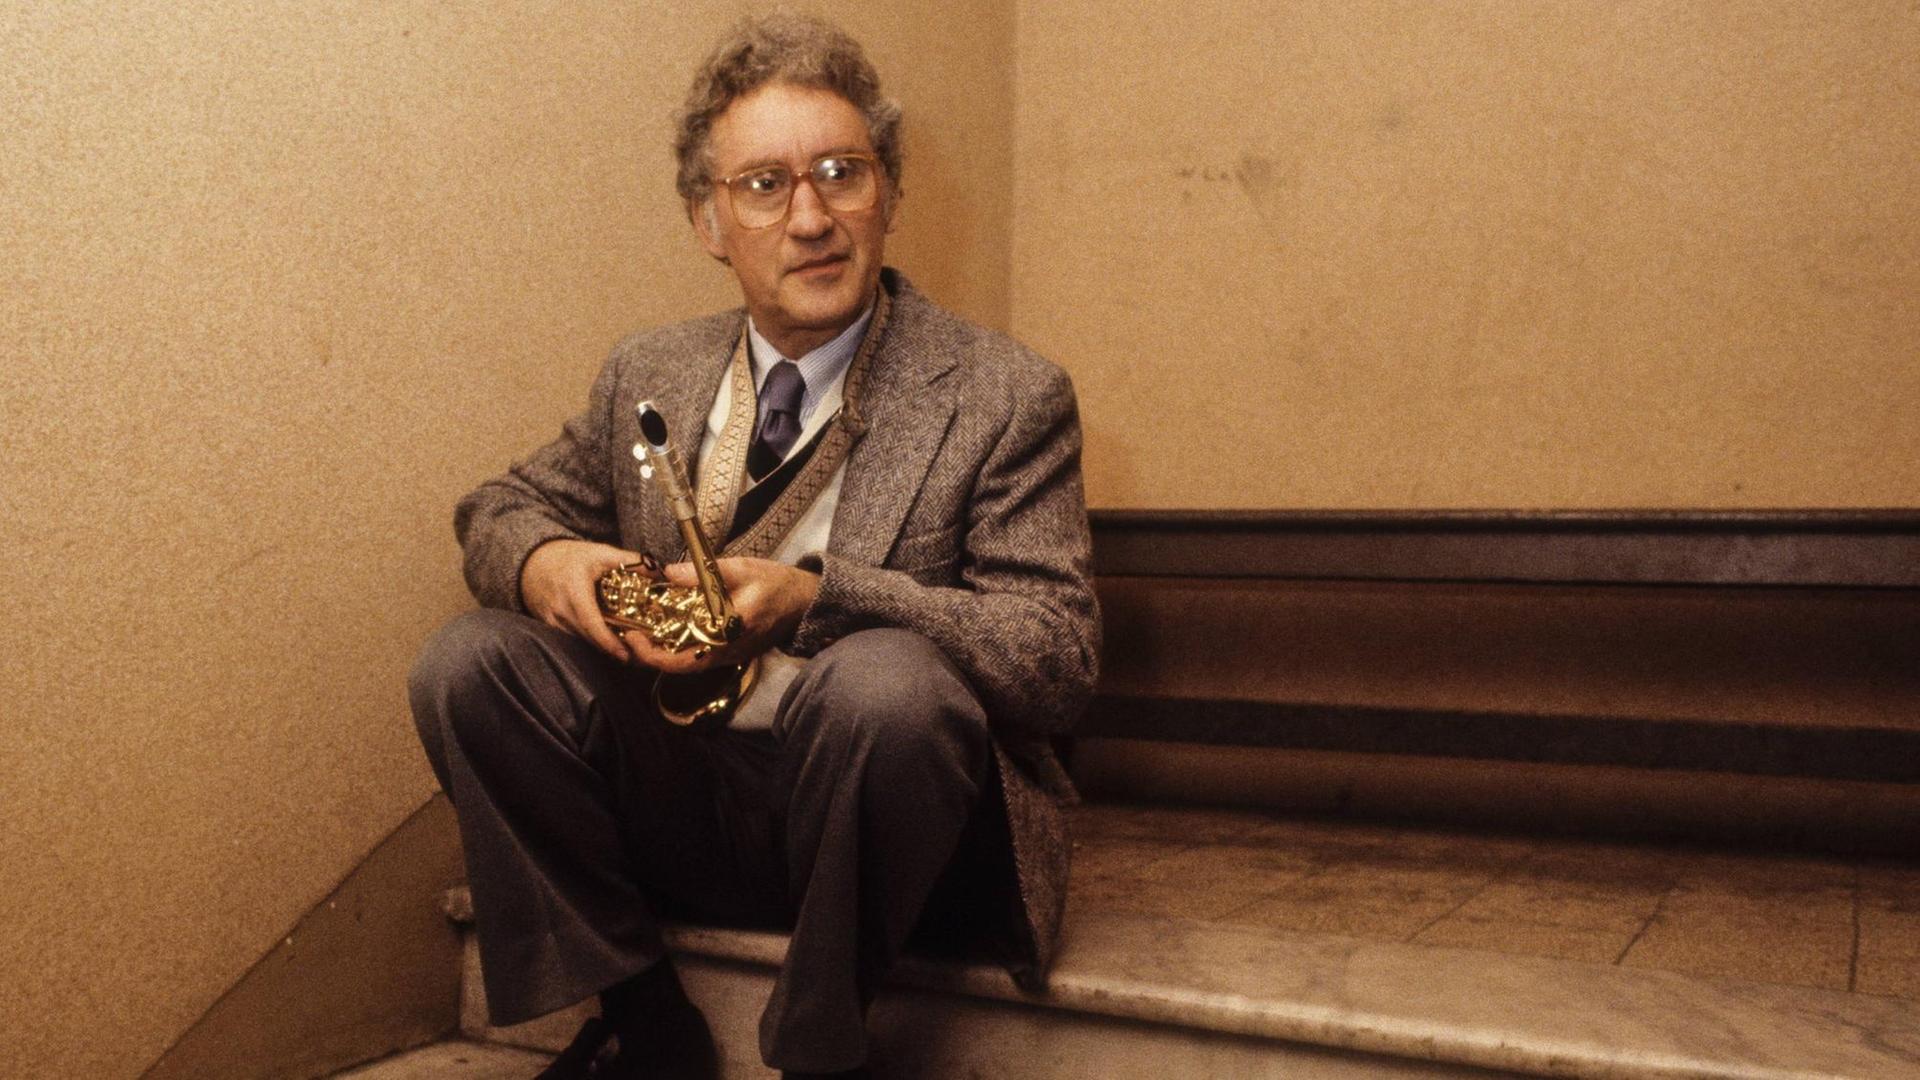 Ein grauhaariger Mann mit Brille sitzt auf einer Stufe in einem Treppenhaus eines Gebäudes. Er trägt einen Anzug und hält sein Altsaxofon auf den Knien.